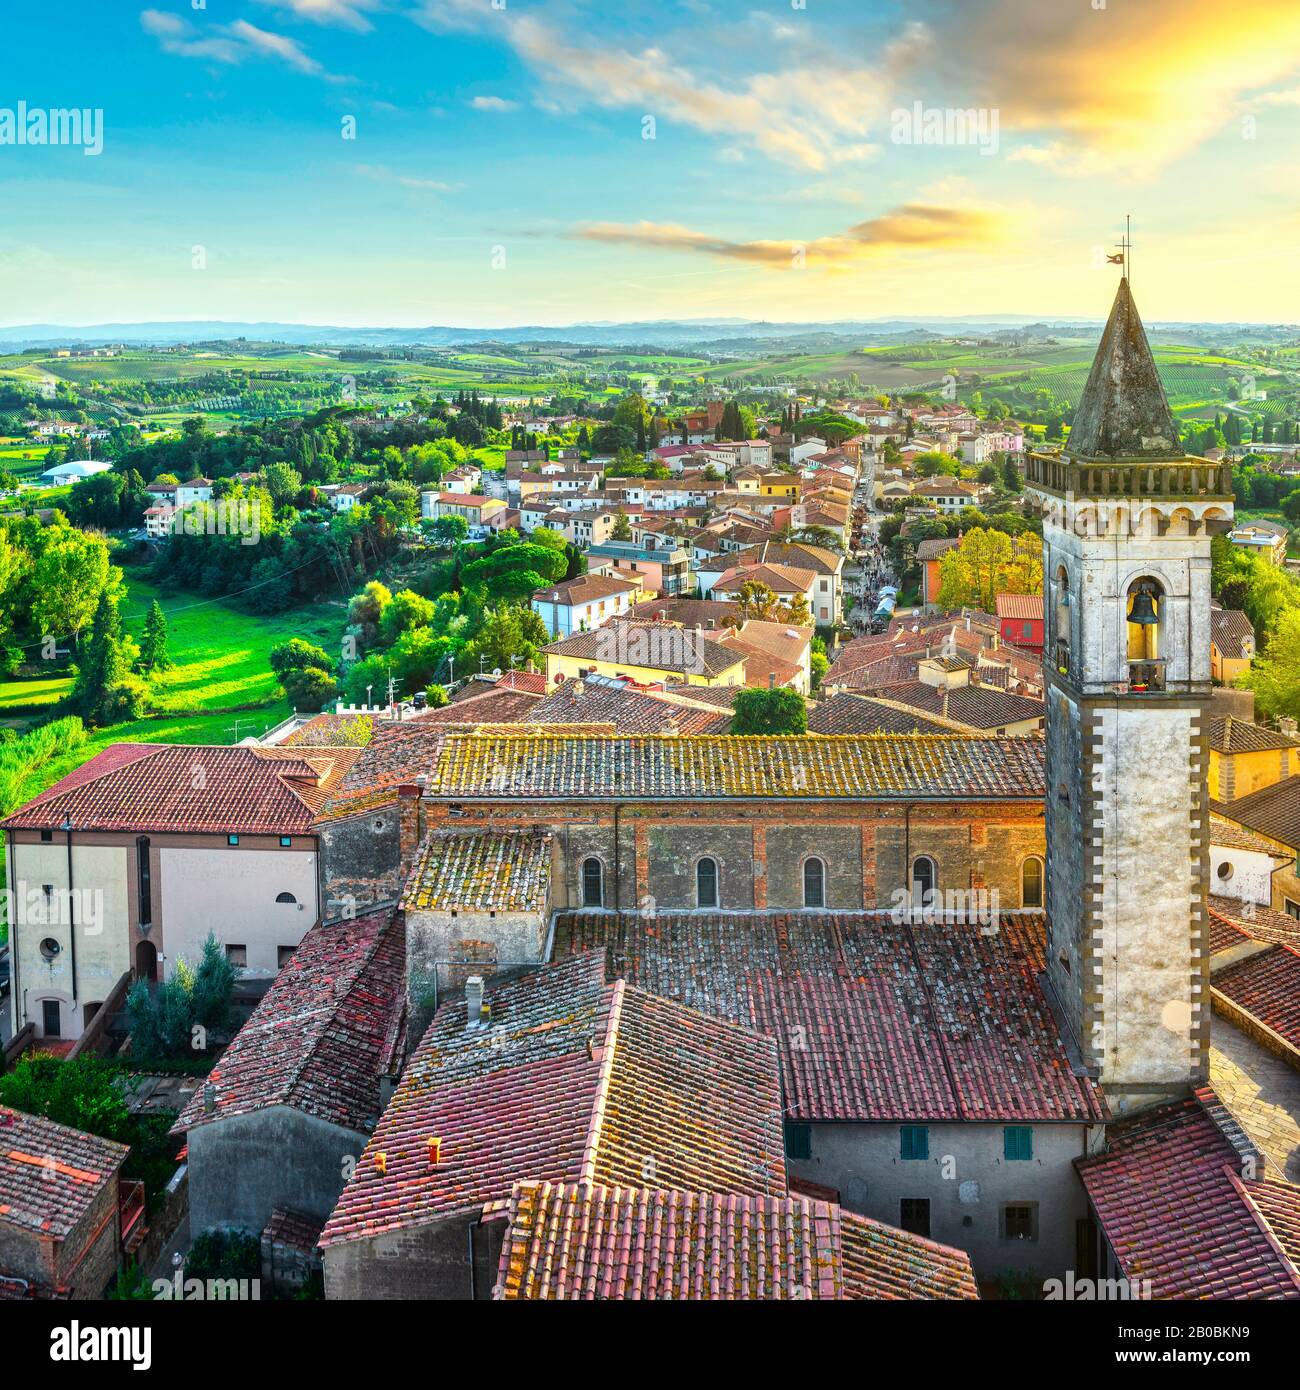 Village de Vinci, Leonardo de naissance, vue aérienne et clocher de l'église. Florence, Toscane, Italie Europe Banque D'Images